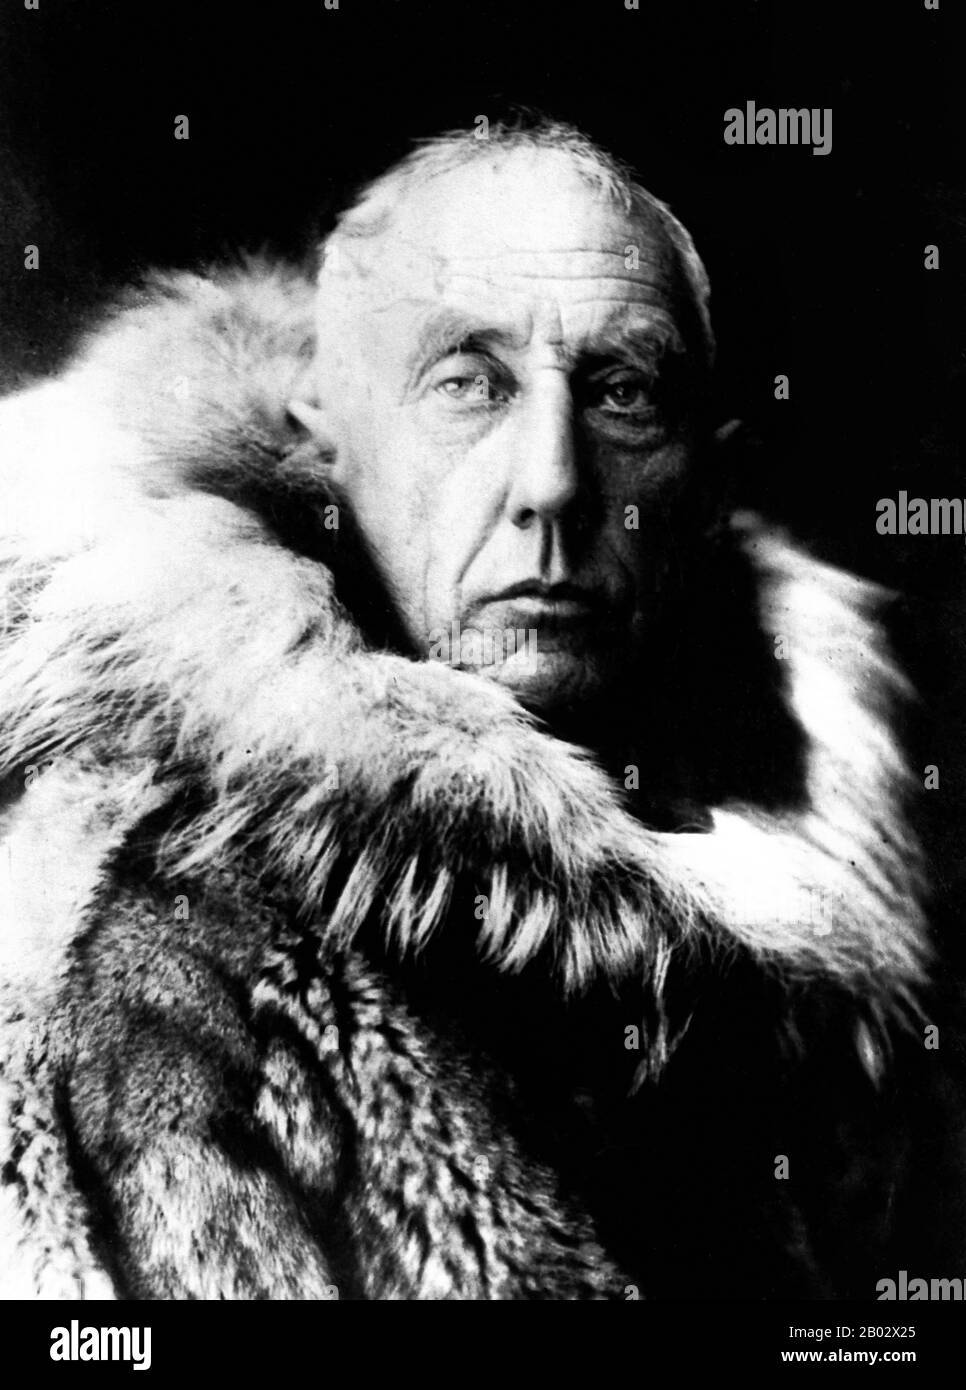 Roald Engelbregt Gravning Amundsen (16. Juli 1872 - ca. Juni 1928) war ein norwegischer Polarforscher. Er leitete die Antarktisexpedition (1910-12), die als erster den Südpol erreichte, am 14. Dezember 1911. 1926 war er der erste Expeditionsleiter, der ohne Streit als an den Nordpol gelangt anerkannt wurde. Er ist auch bekannt als die erste Expedition, die die Nordwest-Passage (1903-06) in der Arktis durchqueren konnte. Er verschwand im Juni 1928 in der Arktis, während er mit dem Flugzeug an einer Rettungsmission teilnahm. Amundsen gehörte zu den wichtigsten Expeditionsleitern, darunter Douglas Mawson, Rober Stockfoto